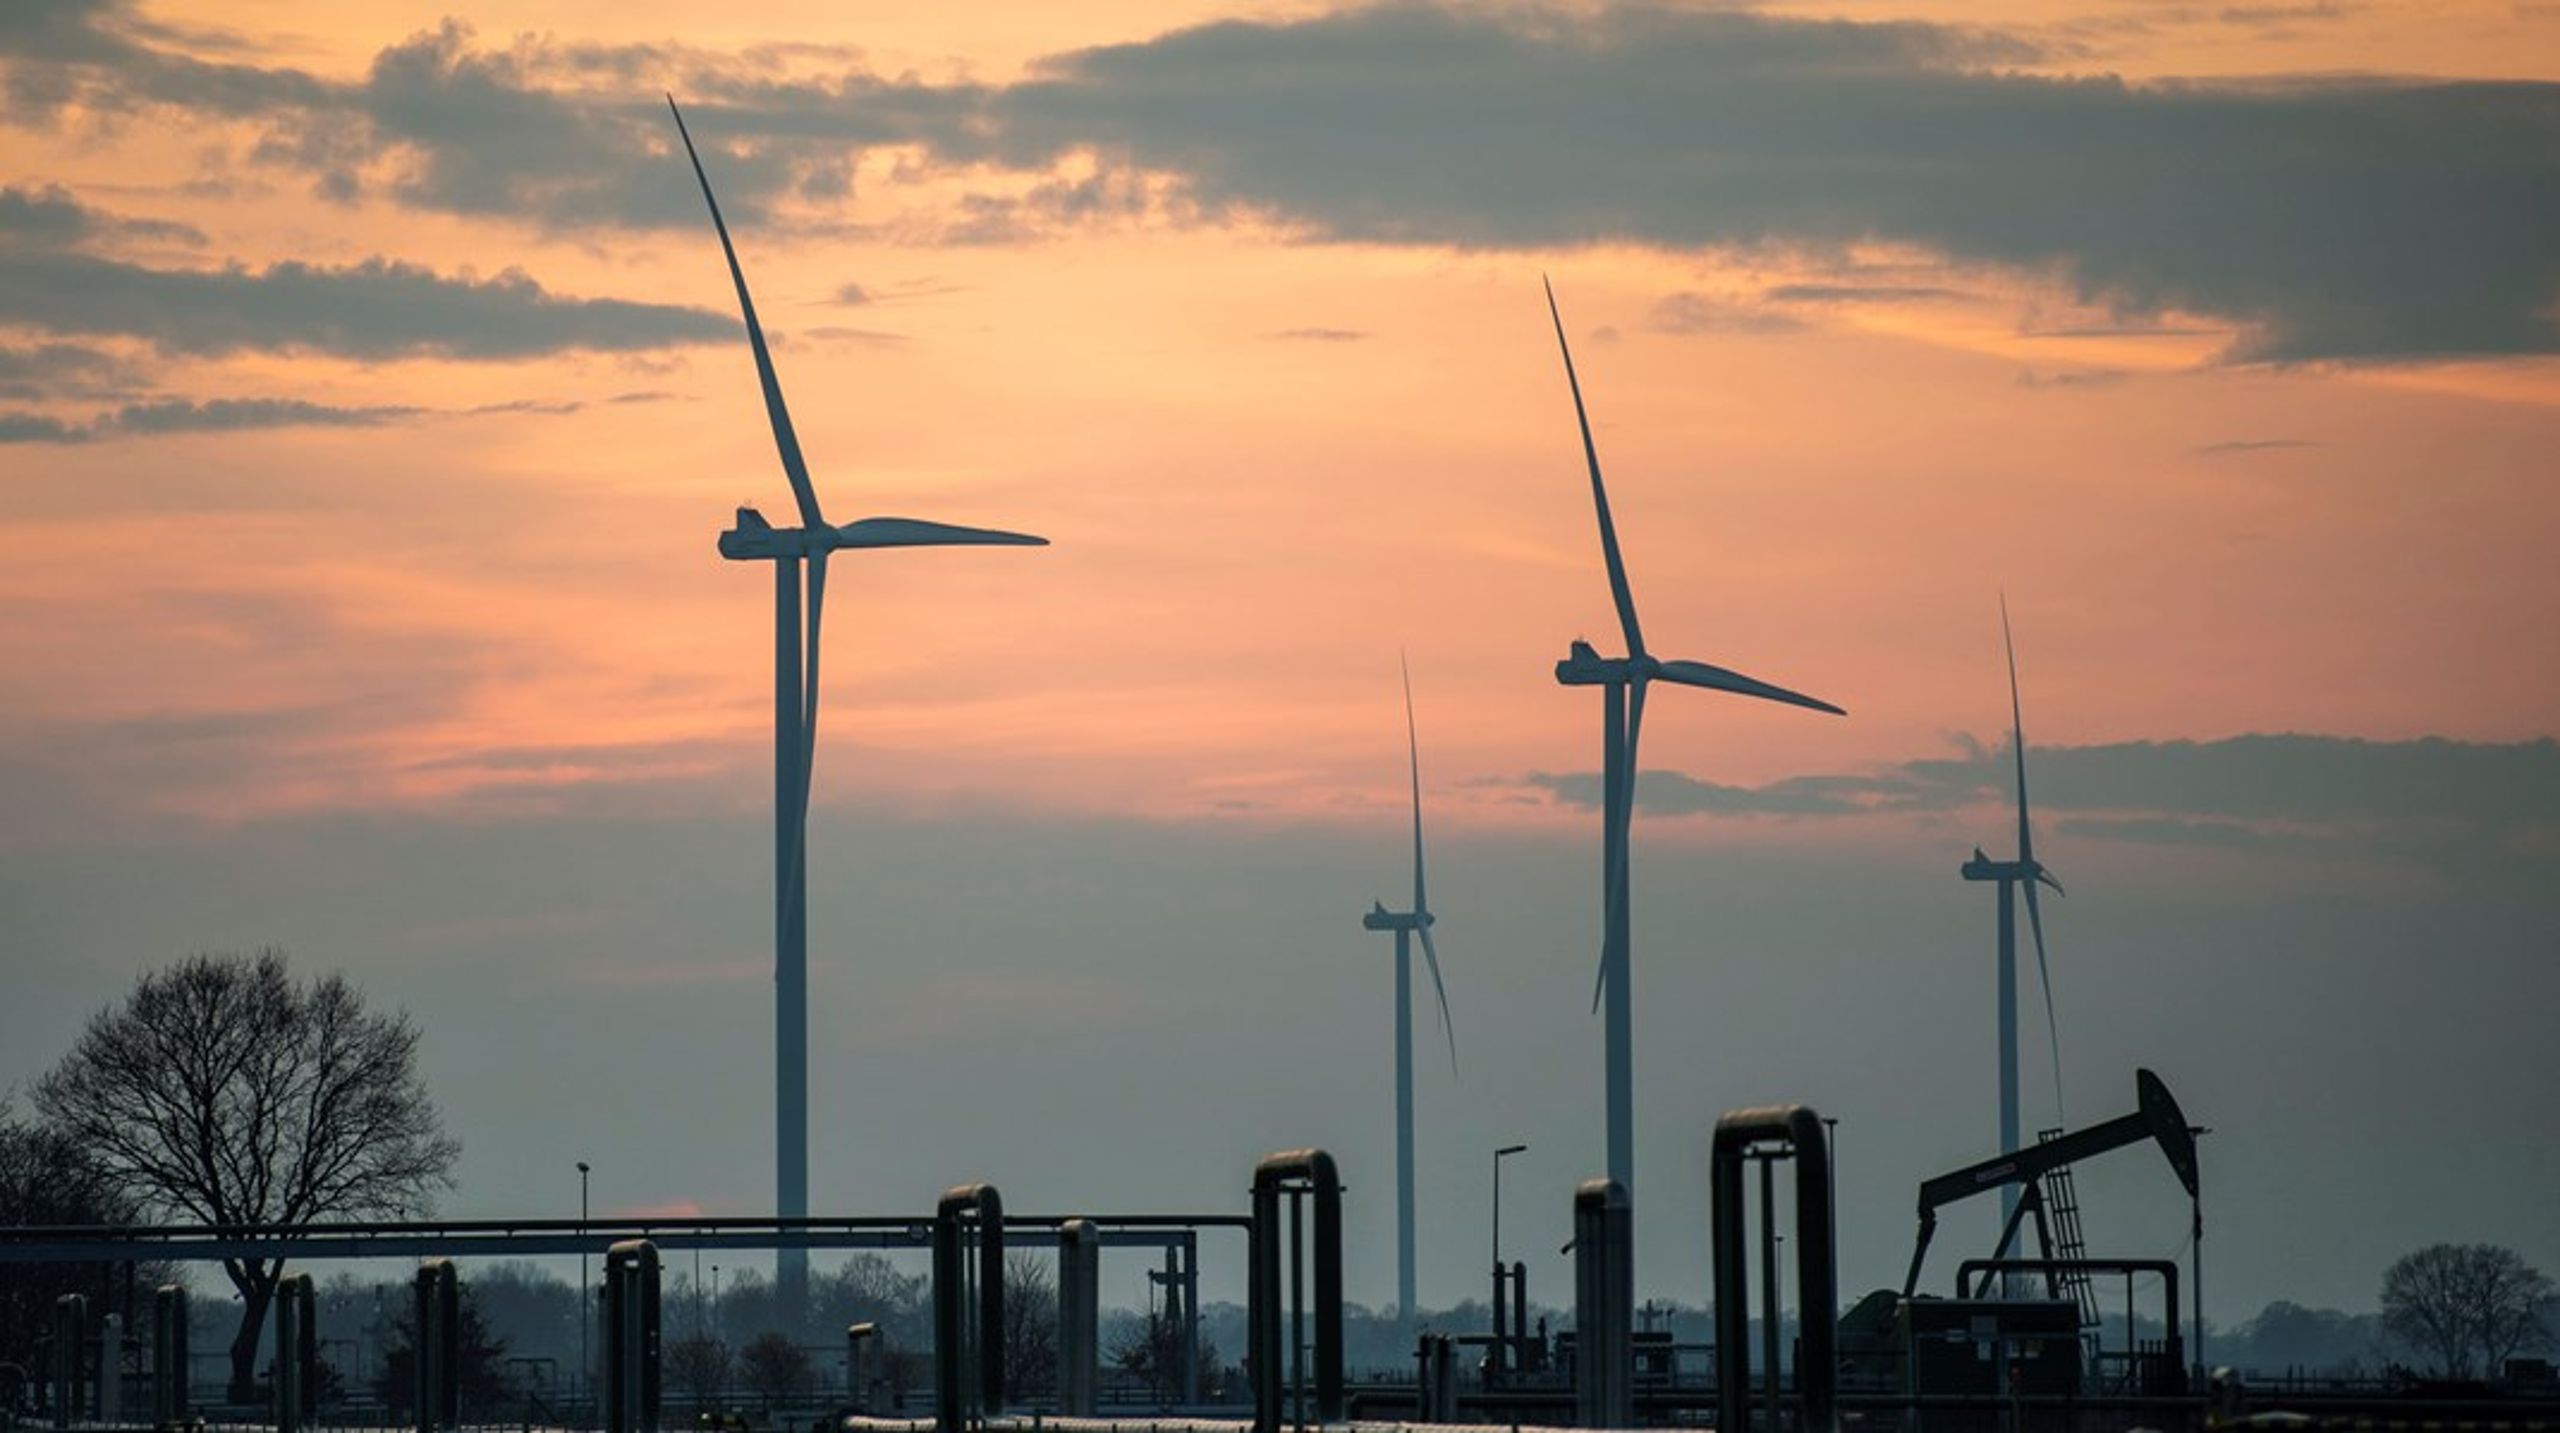 Vindenergi er en ud af mange teknologier, der er omfattet af EU's grønne industripakke. I 2030 skal mindst&nbsp;40
procent af klimateknologierne være fremstillet i EU, lyder målet.